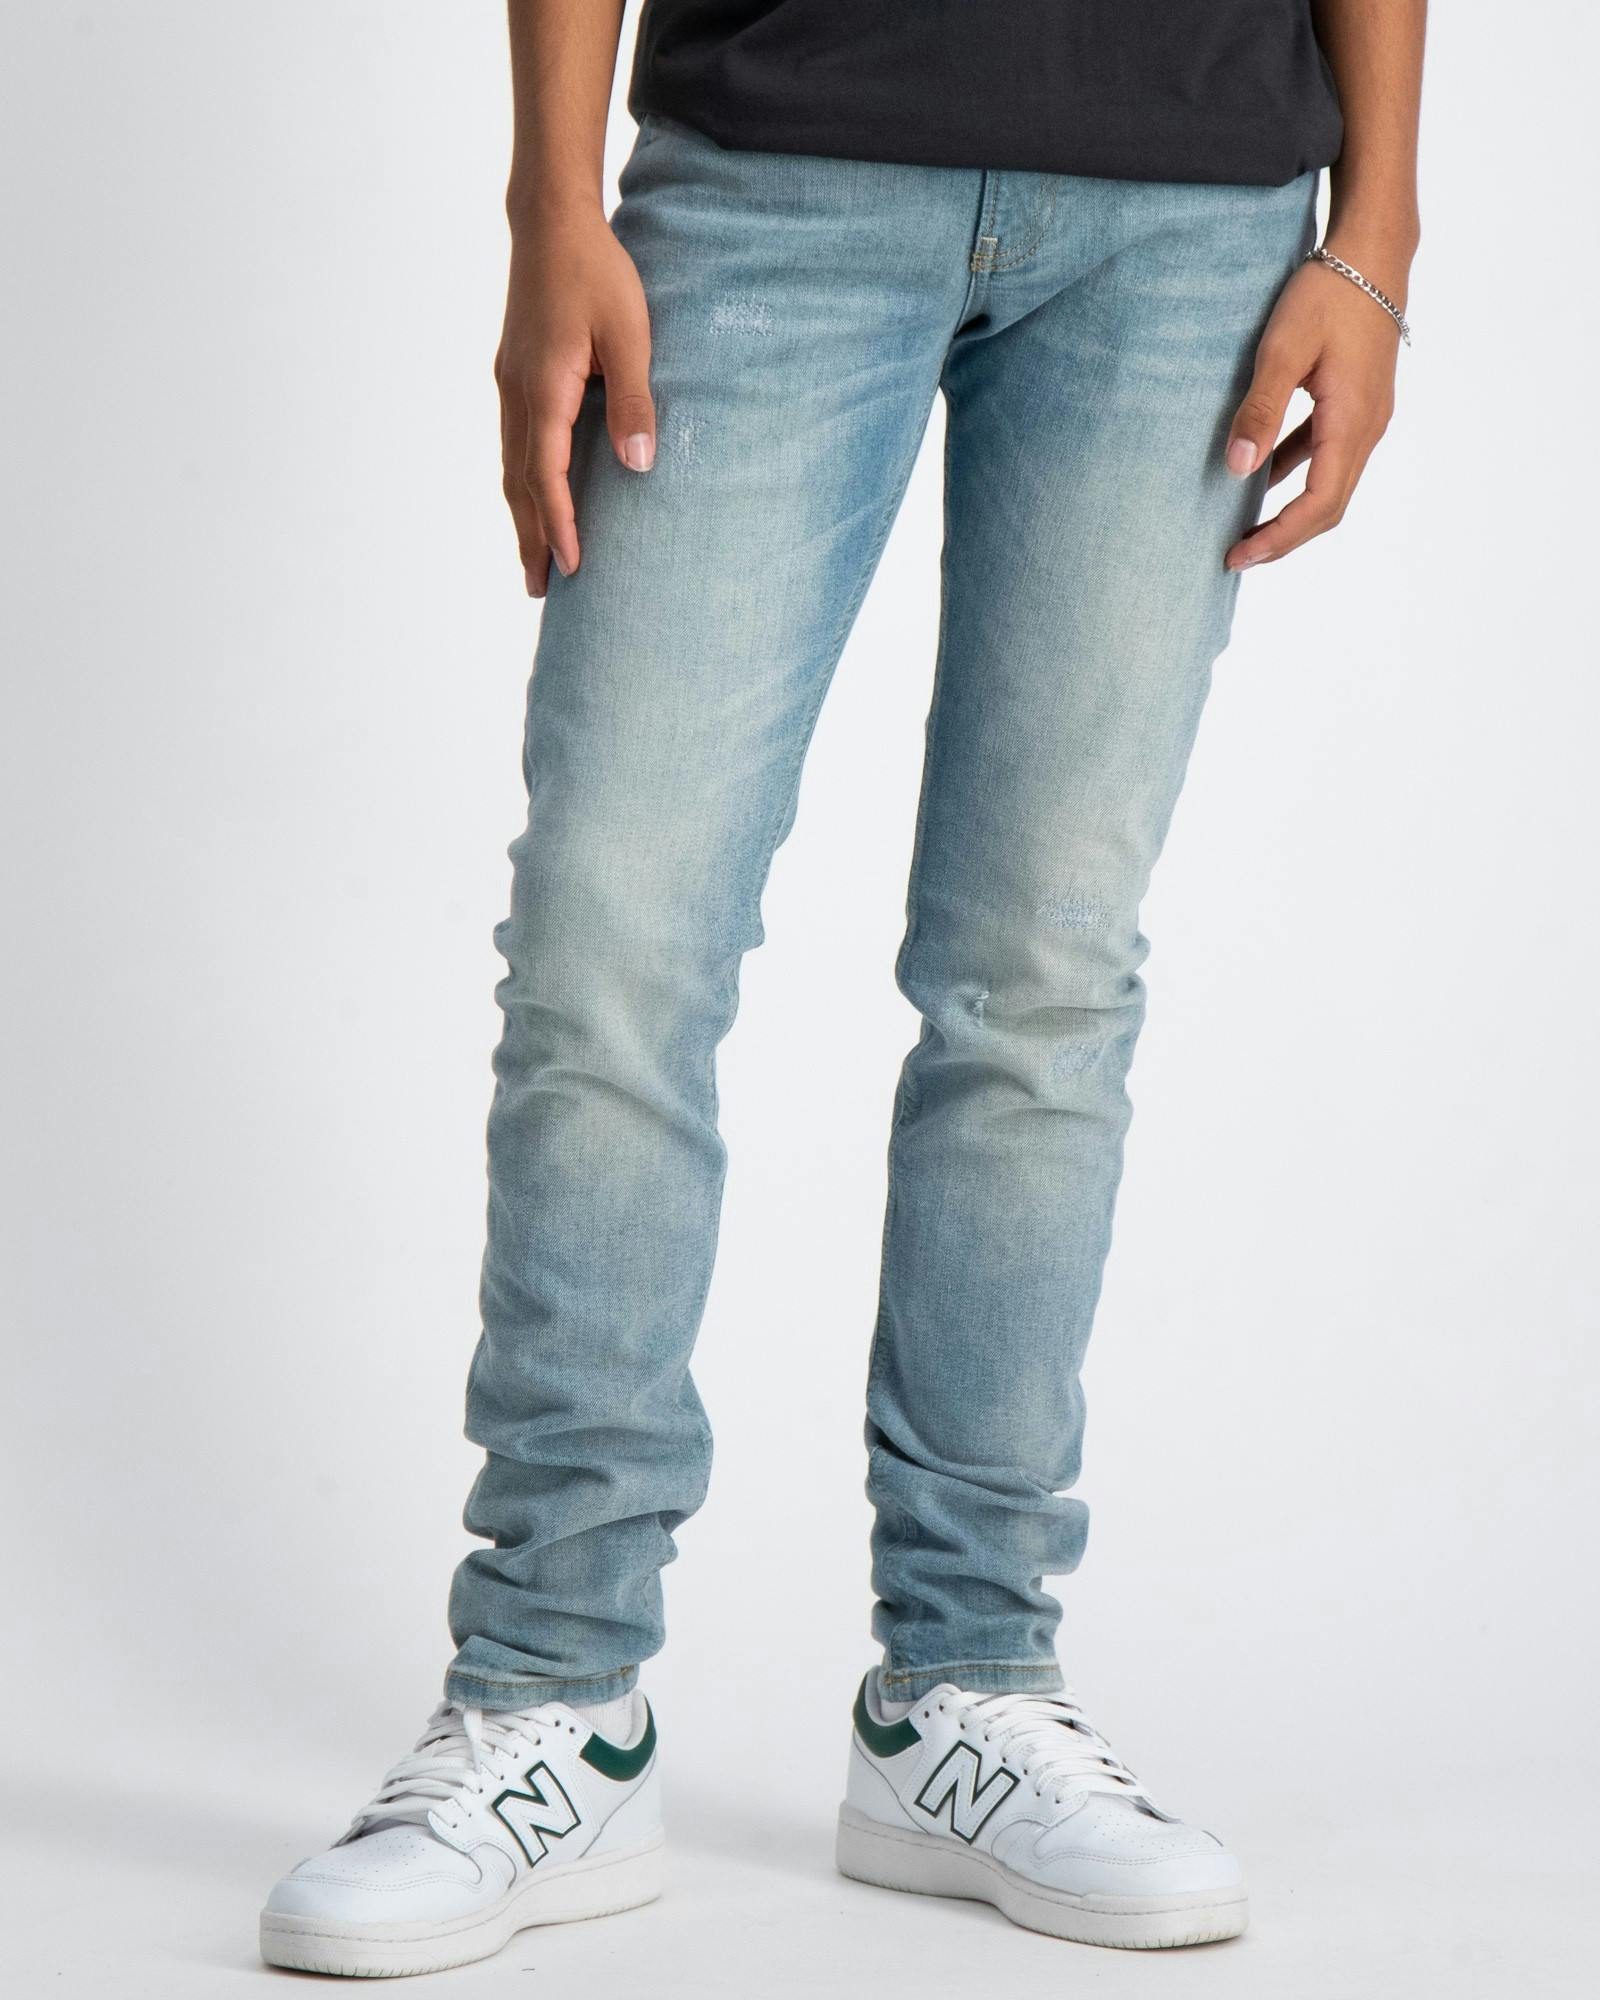 Tigger skinny jeans